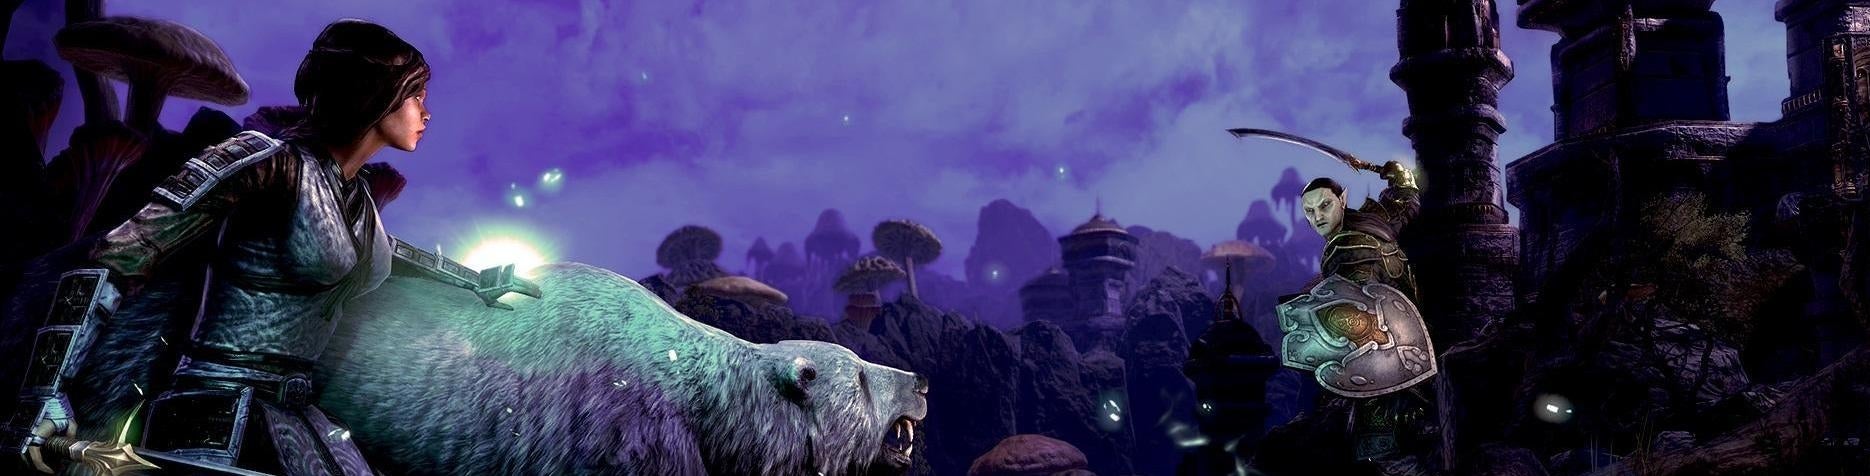 Afbeeldingen van The Elder Scrolls Online: Morrowind verwelkomt je met nostalgie